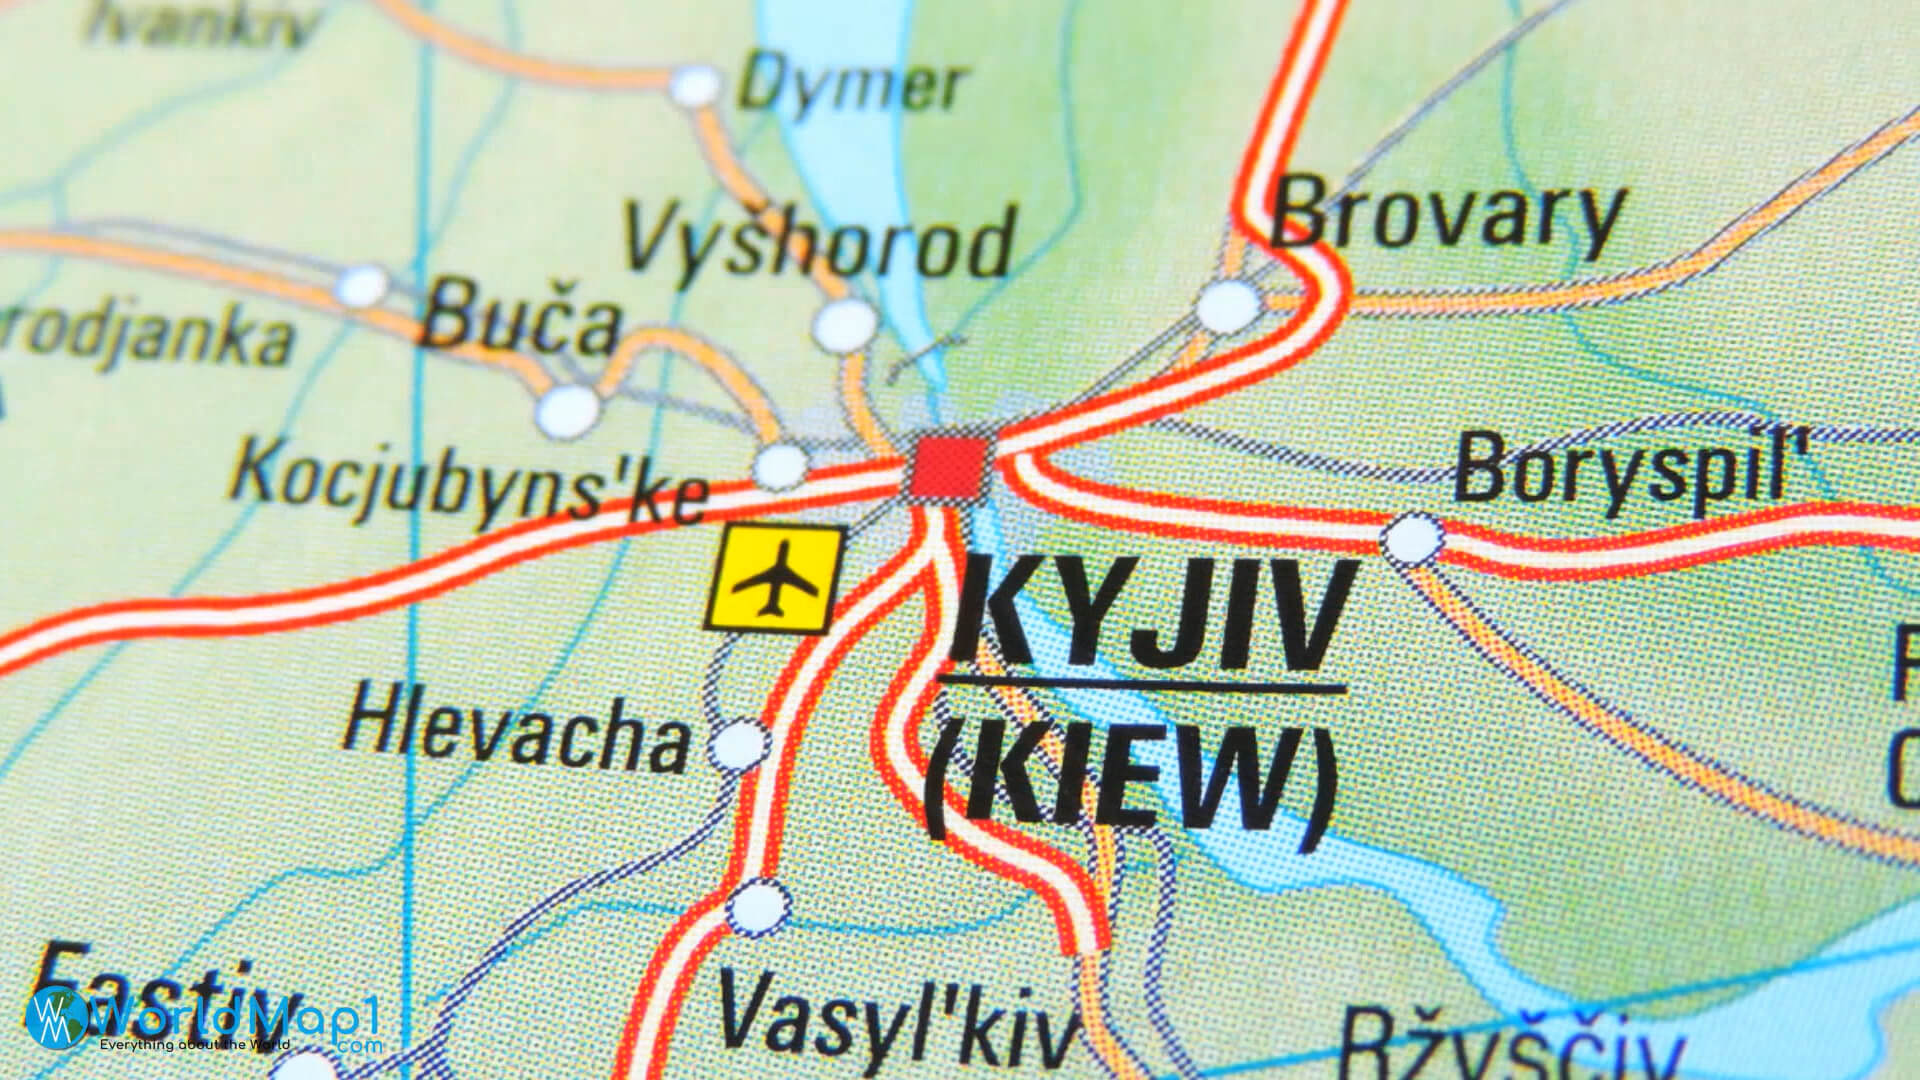 Kyiv Airport Map Ukraine